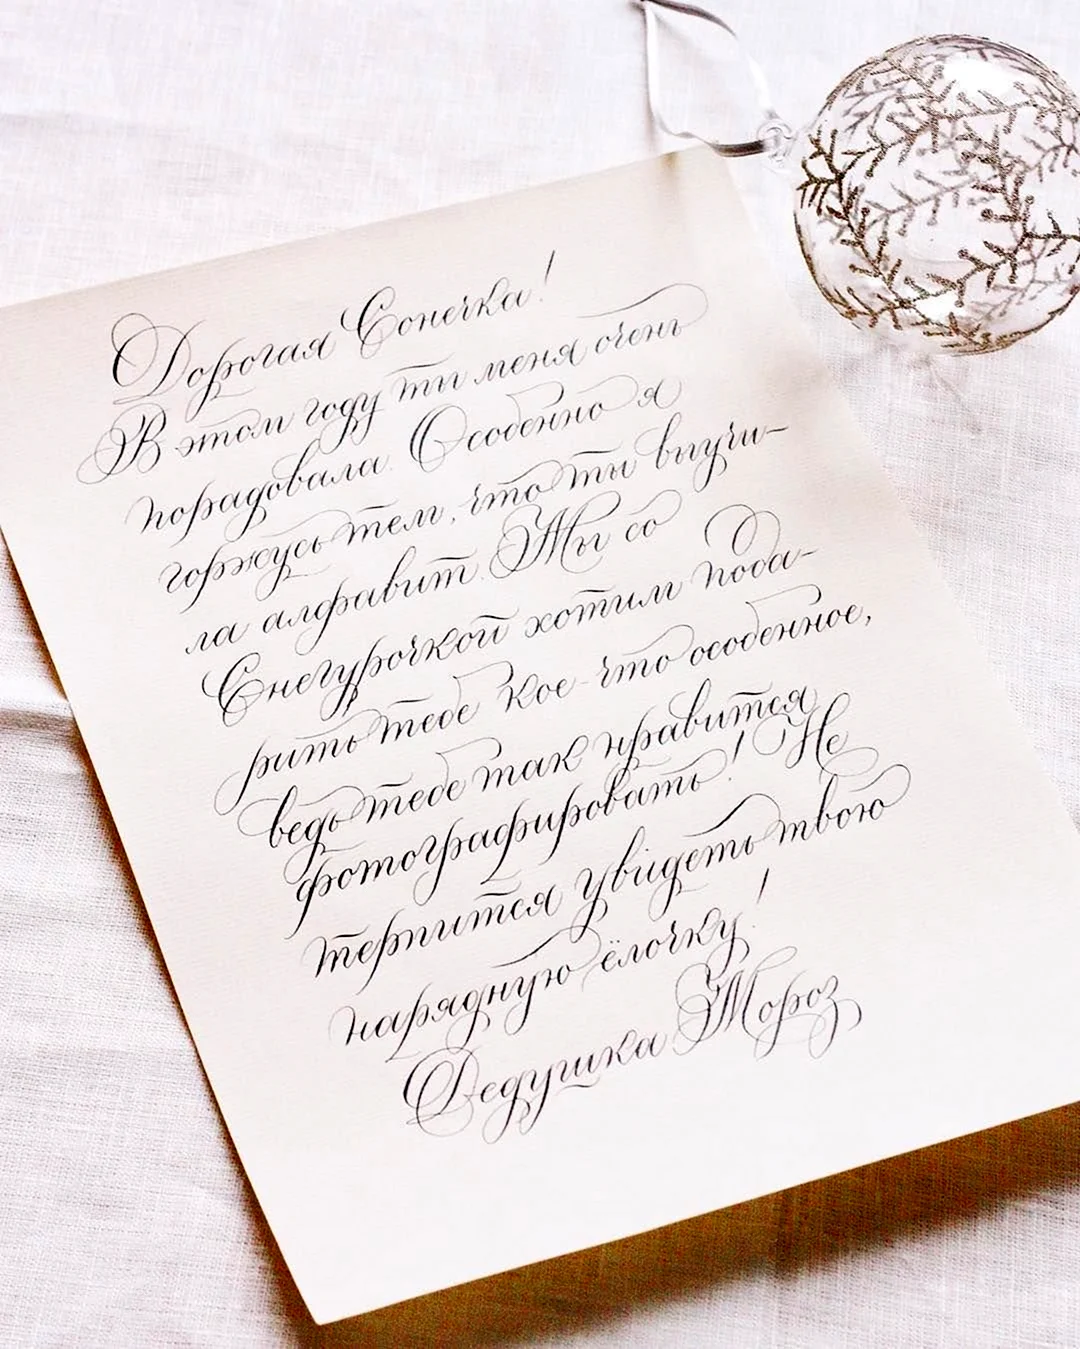 Поздравление каллиграфическим почерком. Открытка для мужчины